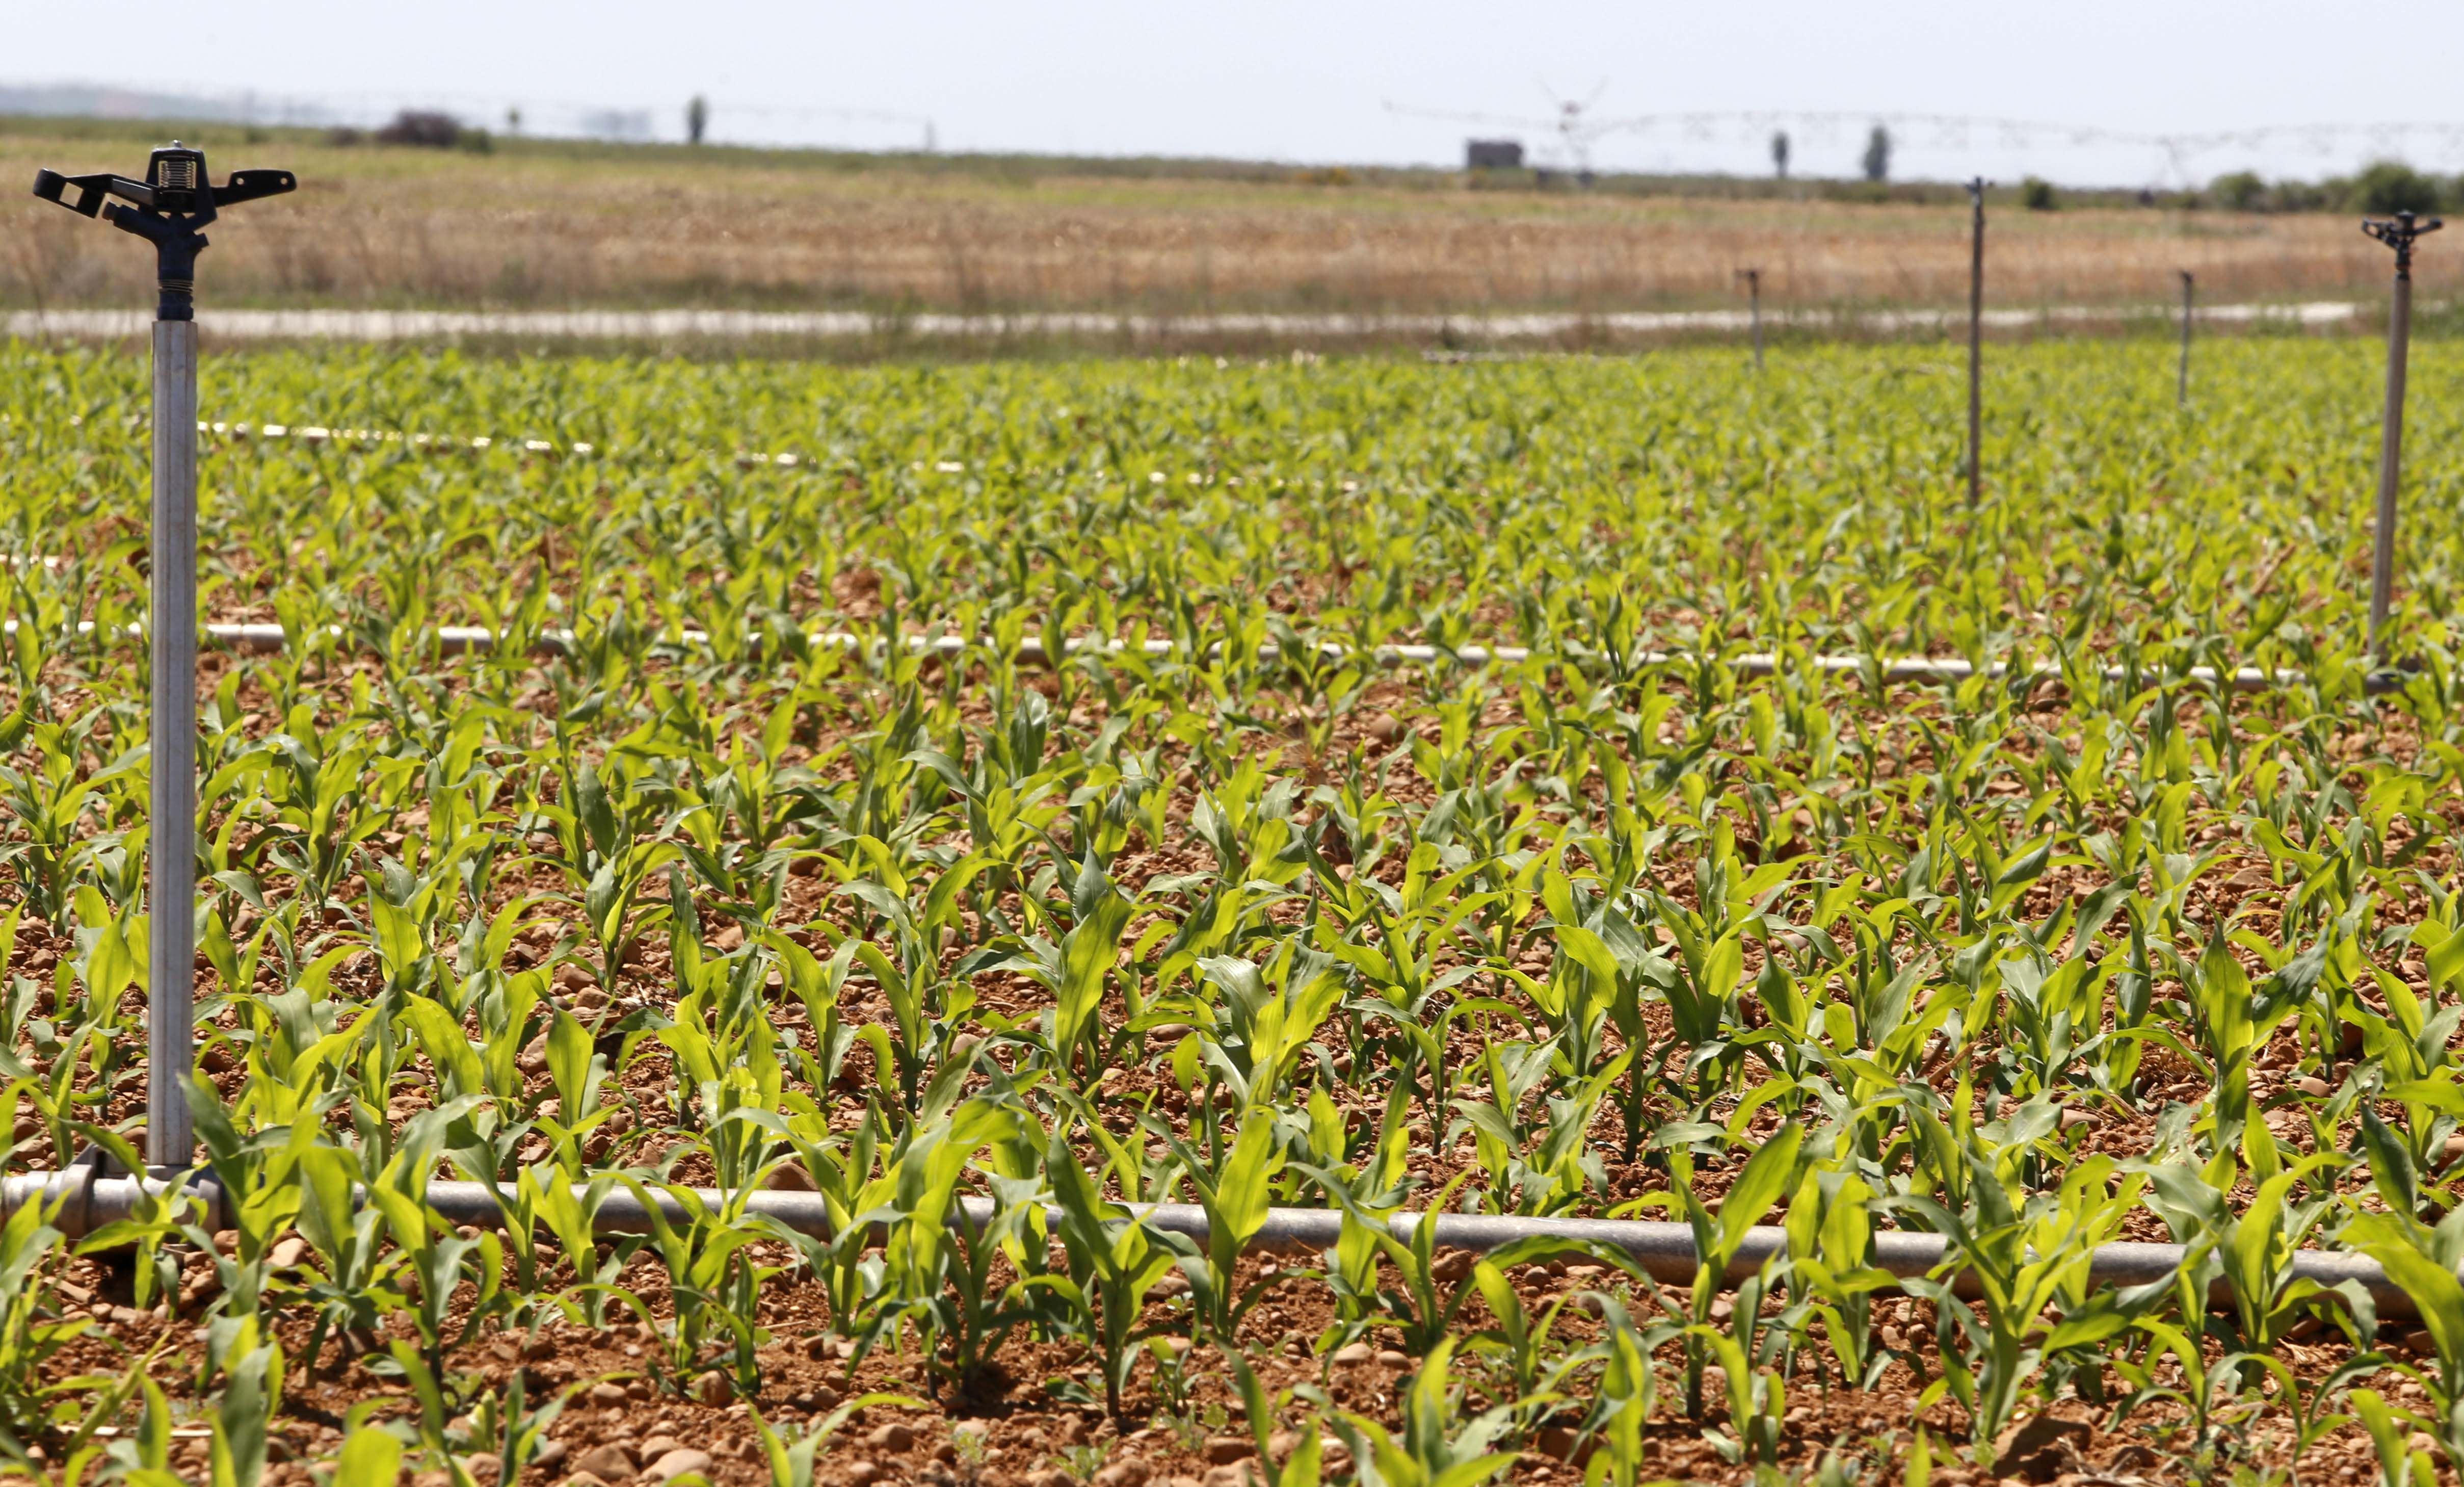 Campo de cultivo destinado a la producción de maíz en Sahagún, León